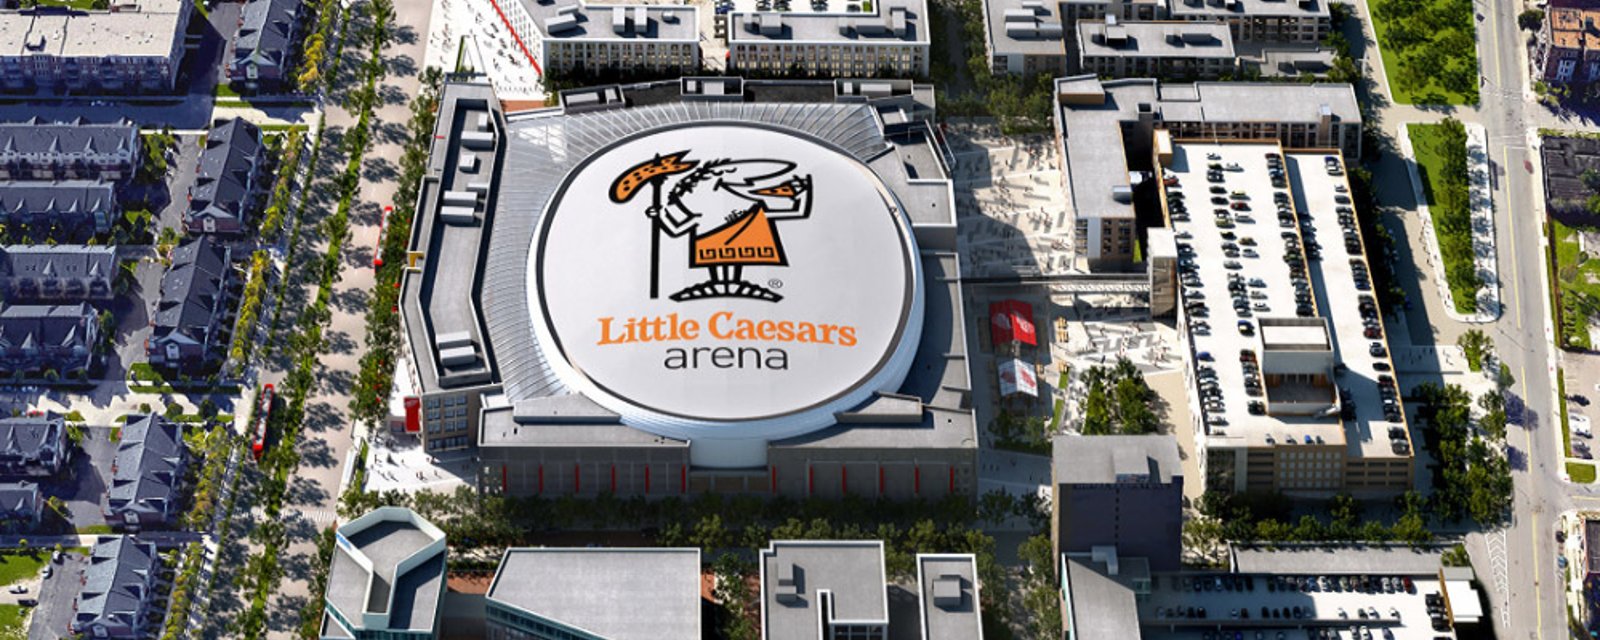 Update: Little Caesars Arena